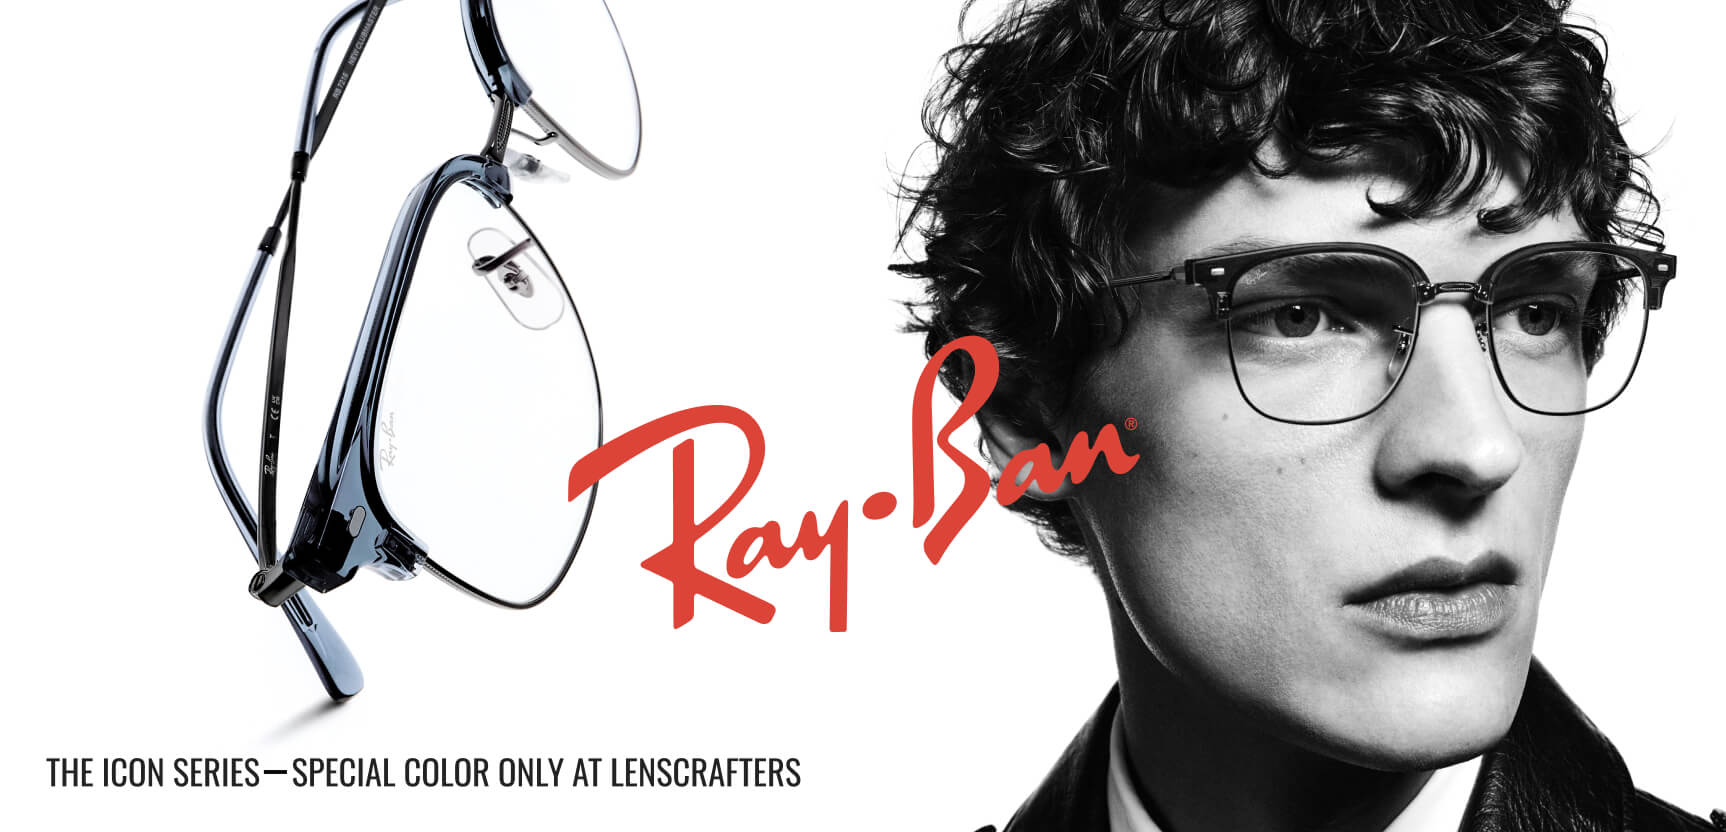 Ray-Ban banner image